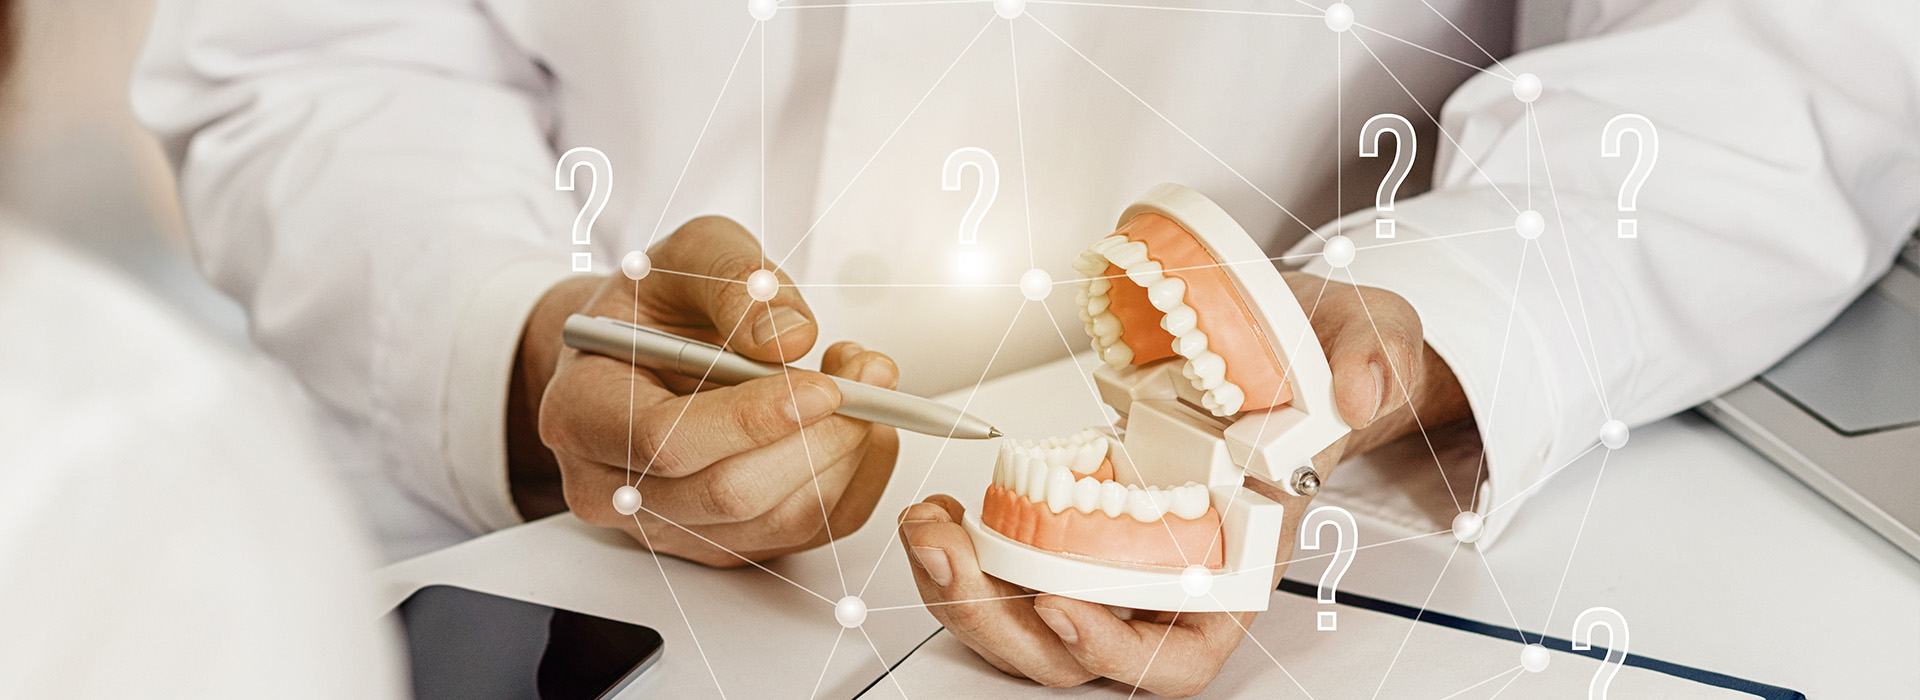 Park Slope Dental Aesthetics | Veneers, Dentures and Teeth Whitening